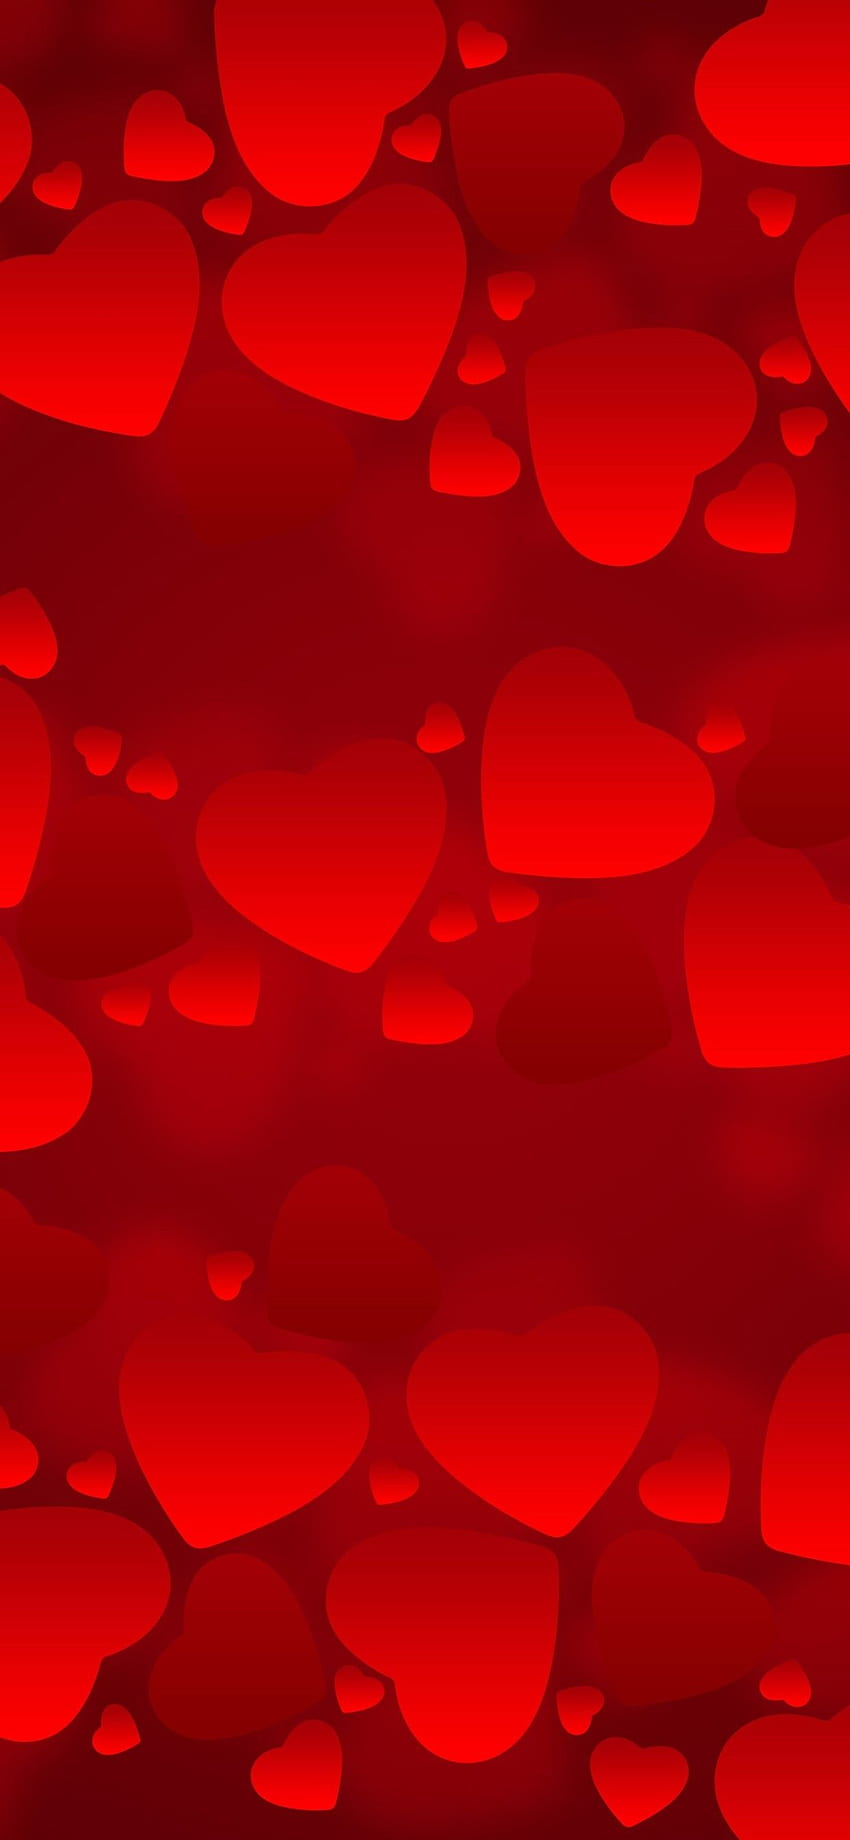 iPhone Muitos corações vermelhos de amor, fundo romântico - fundo de corações Papel de parede de celular HD